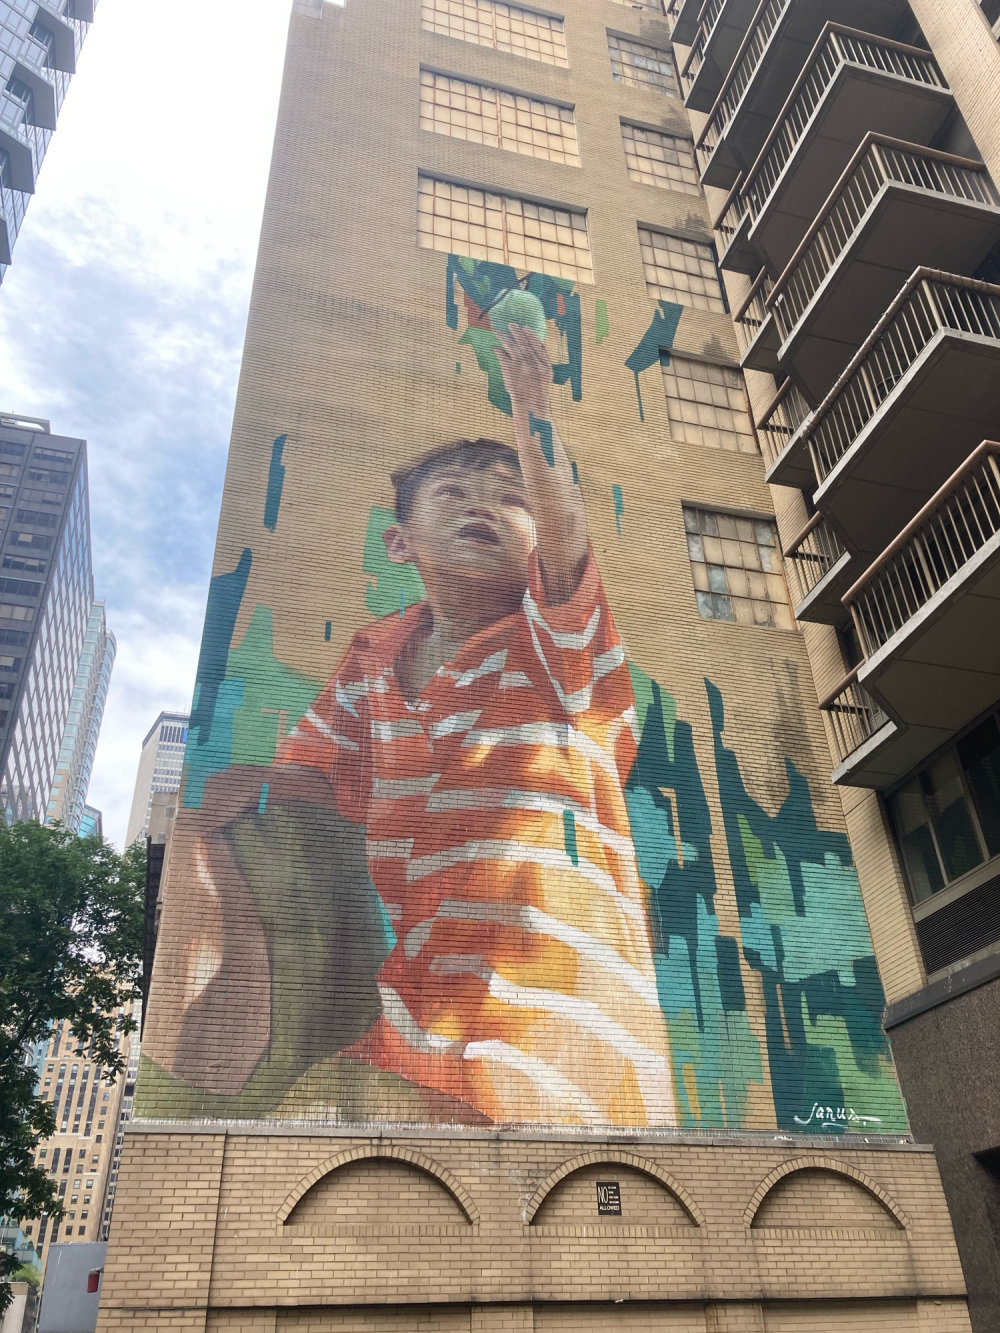 mural in New York by artist Emmanuel Jarus.